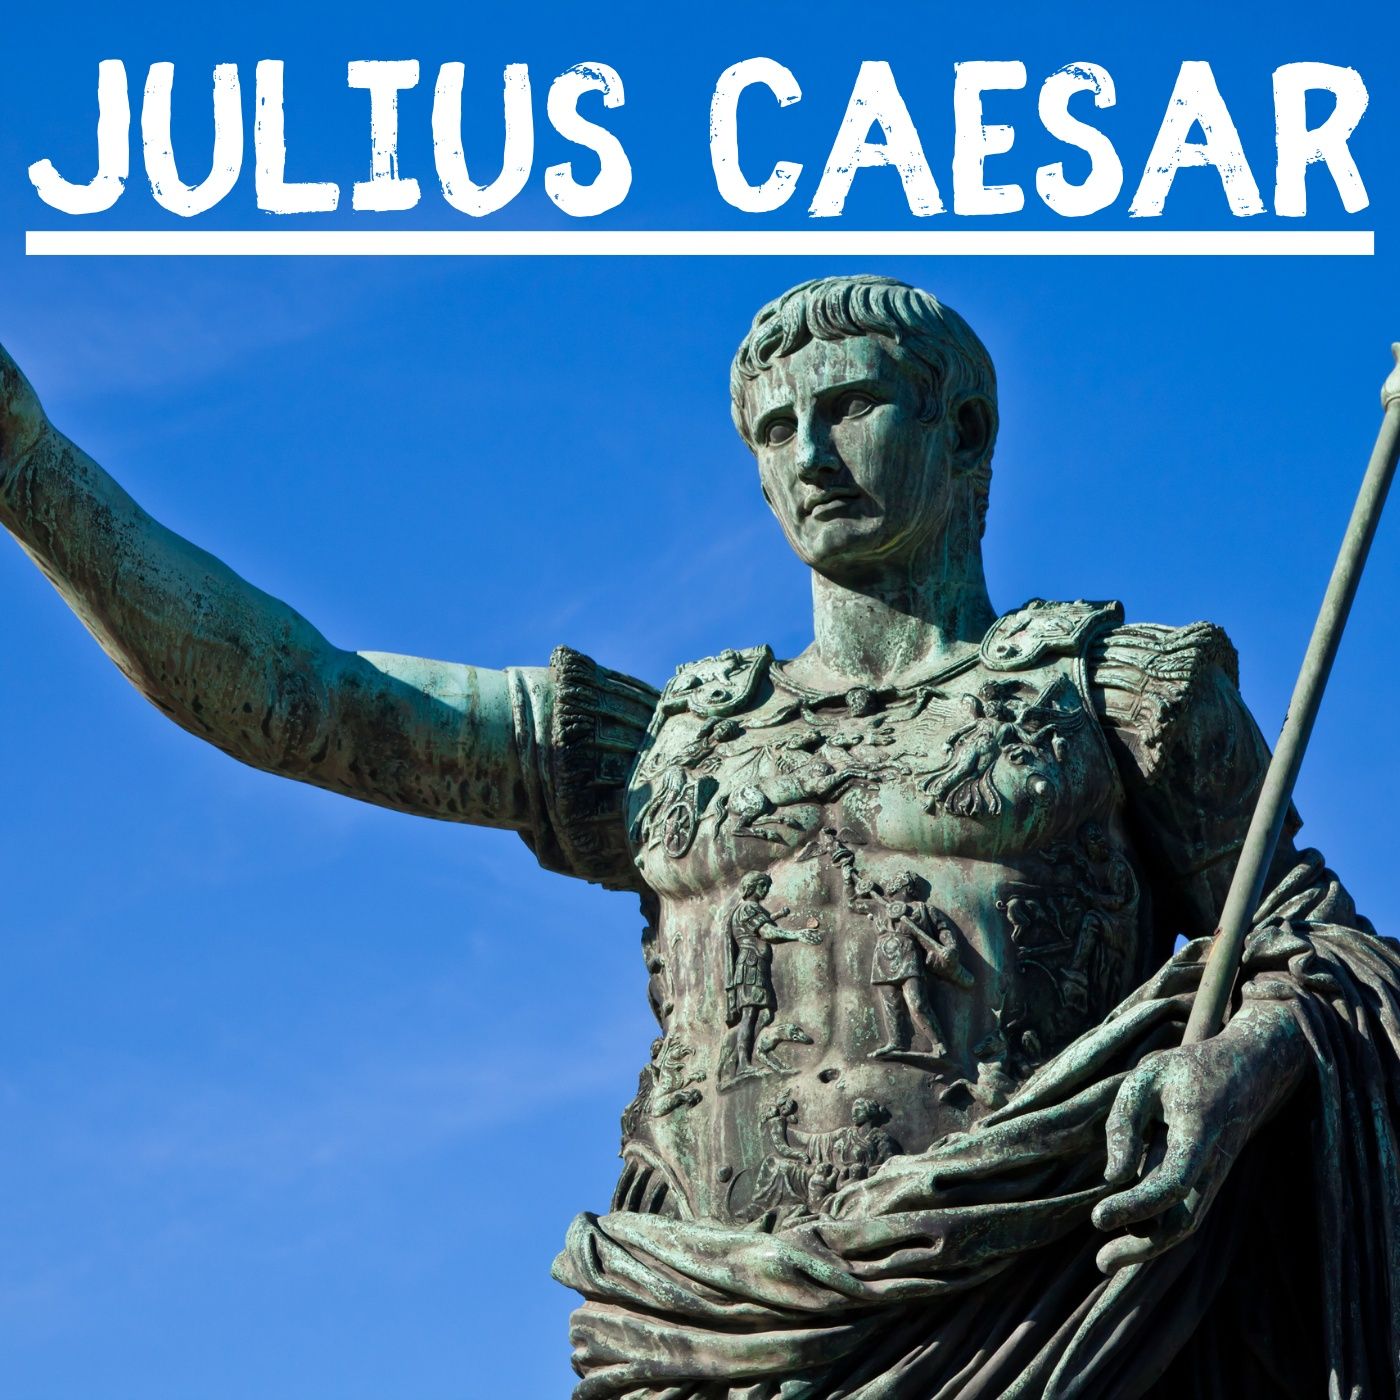 Julius Caesar – William Shakespeare